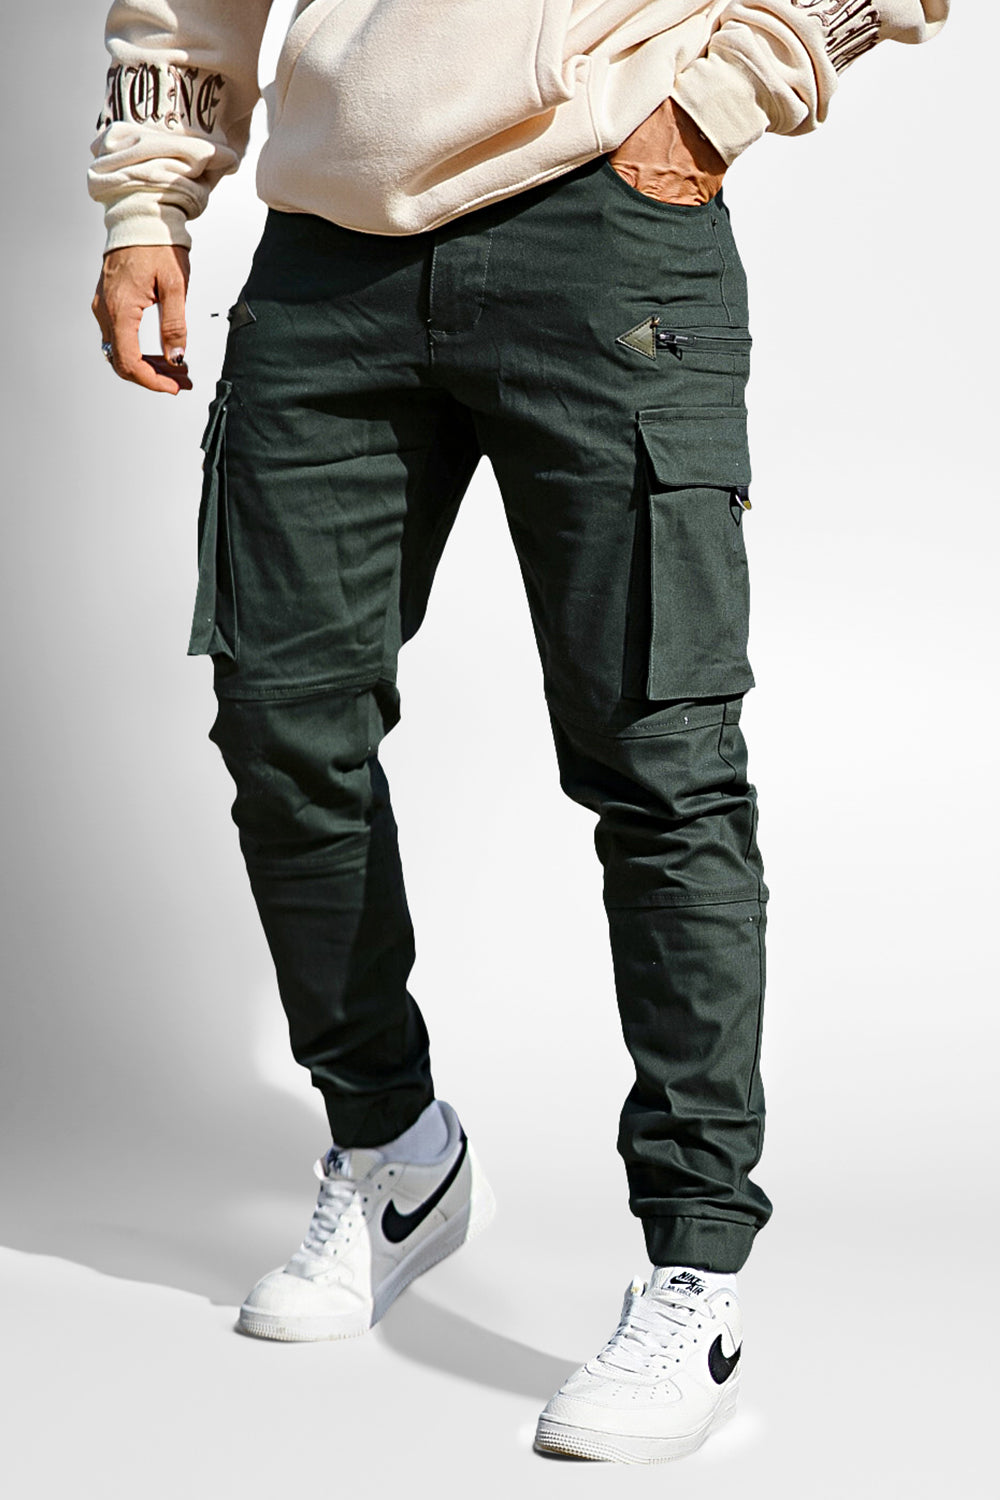 Men's Green Cargo Pants